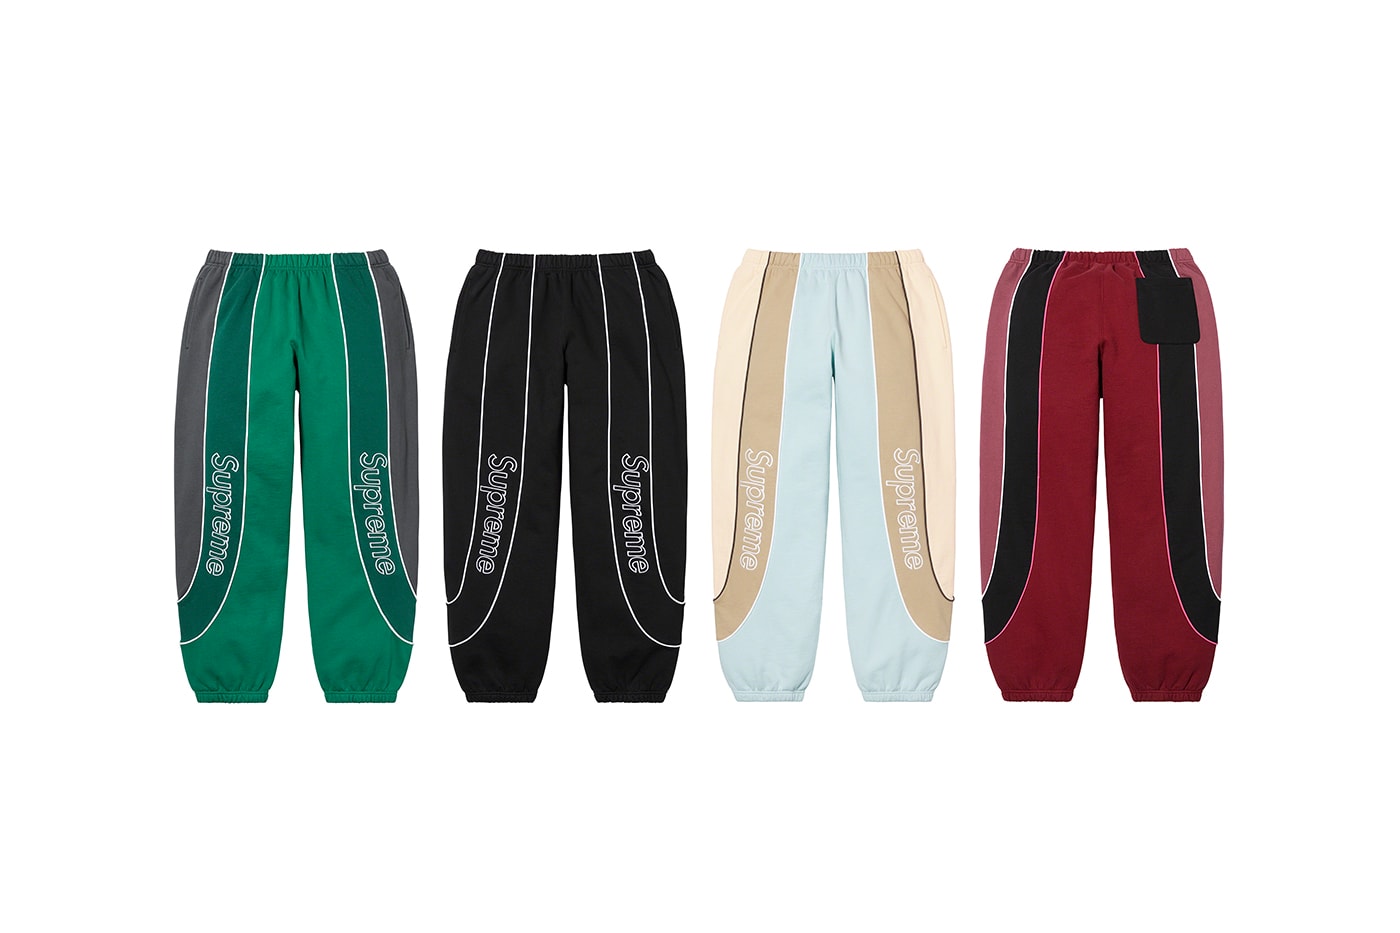 Louis Vuitton x Supreme denim shorts, Women's Fashion, Bottoms